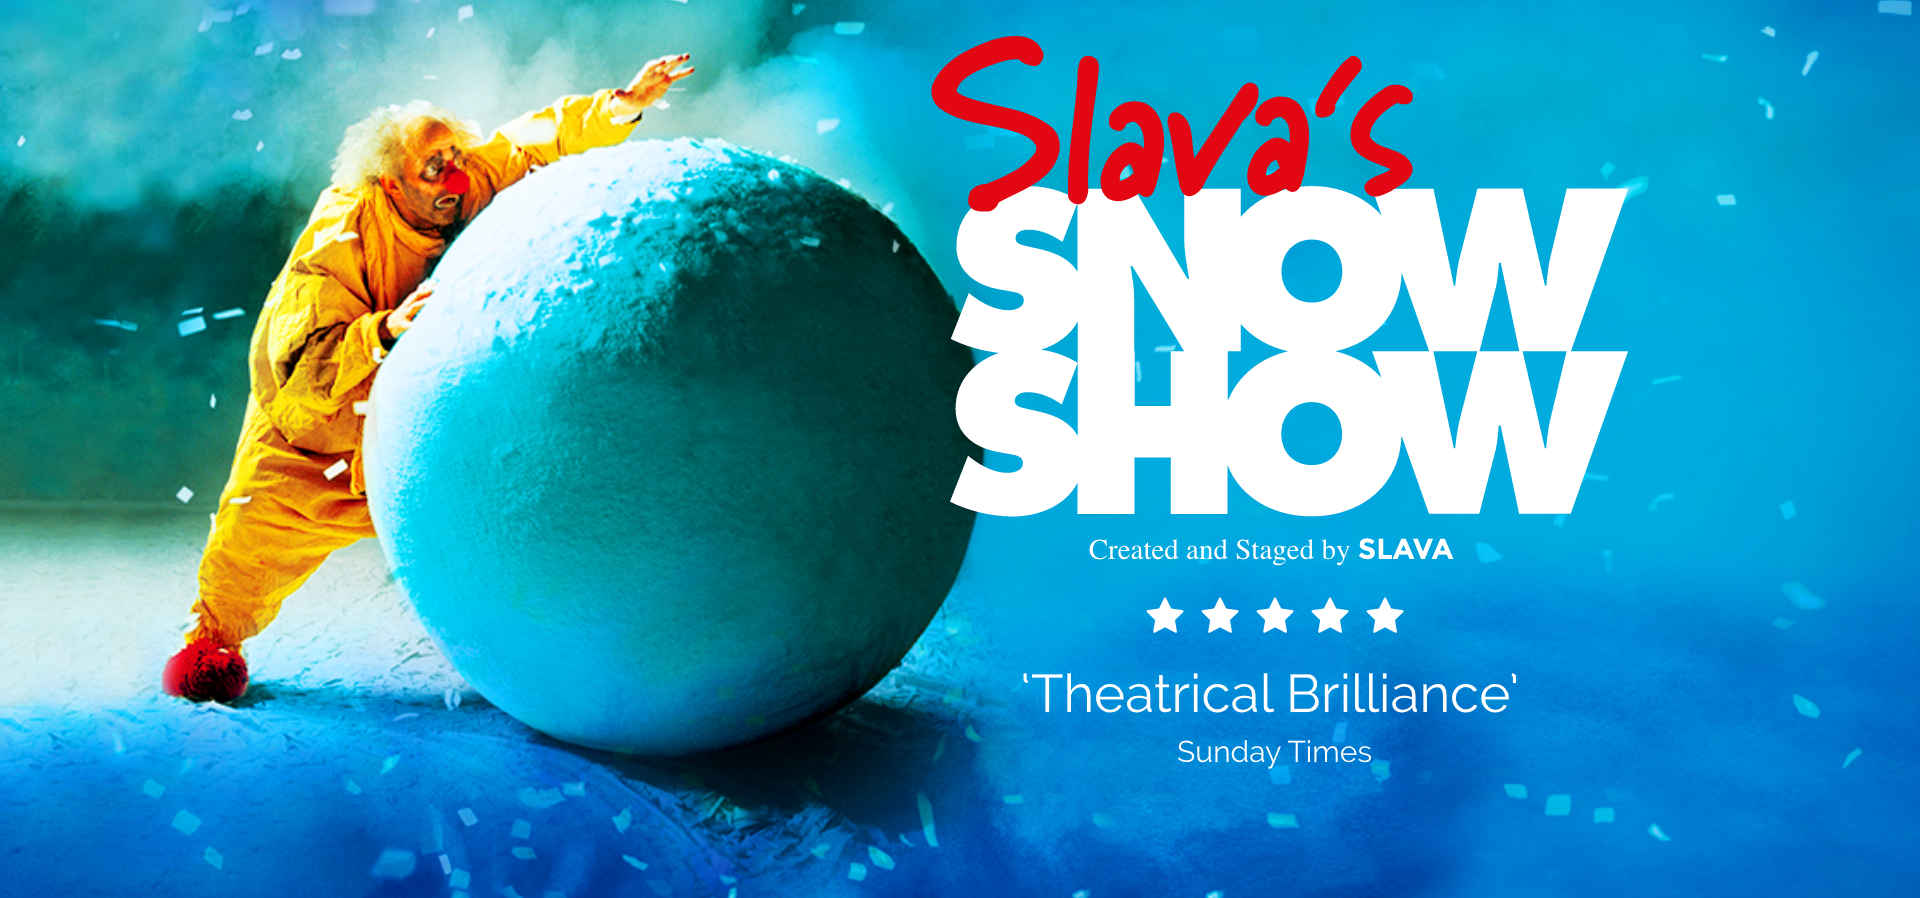 Slava's Snowshow at Stephen Sondheim Theater